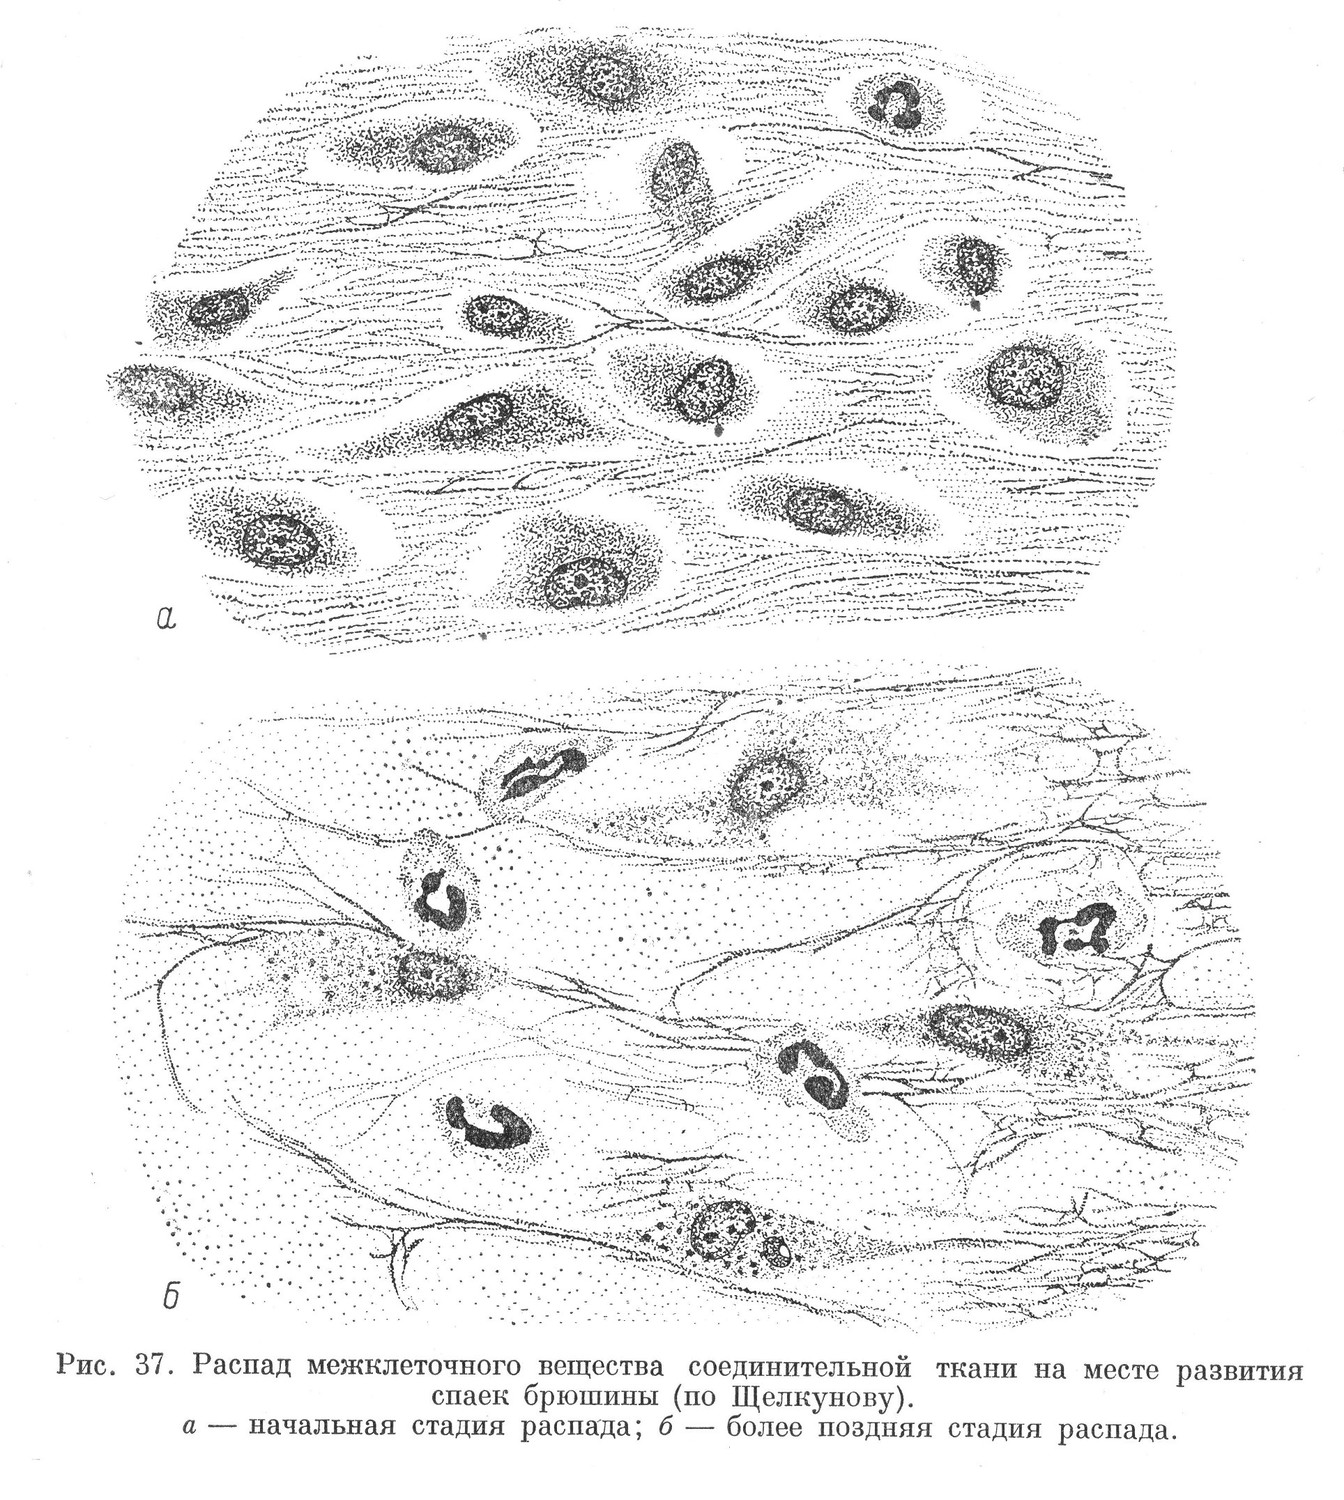 Распад межклеточного вещества соединительной ткани на месте развития спаек брюшины (по Щелкунову).